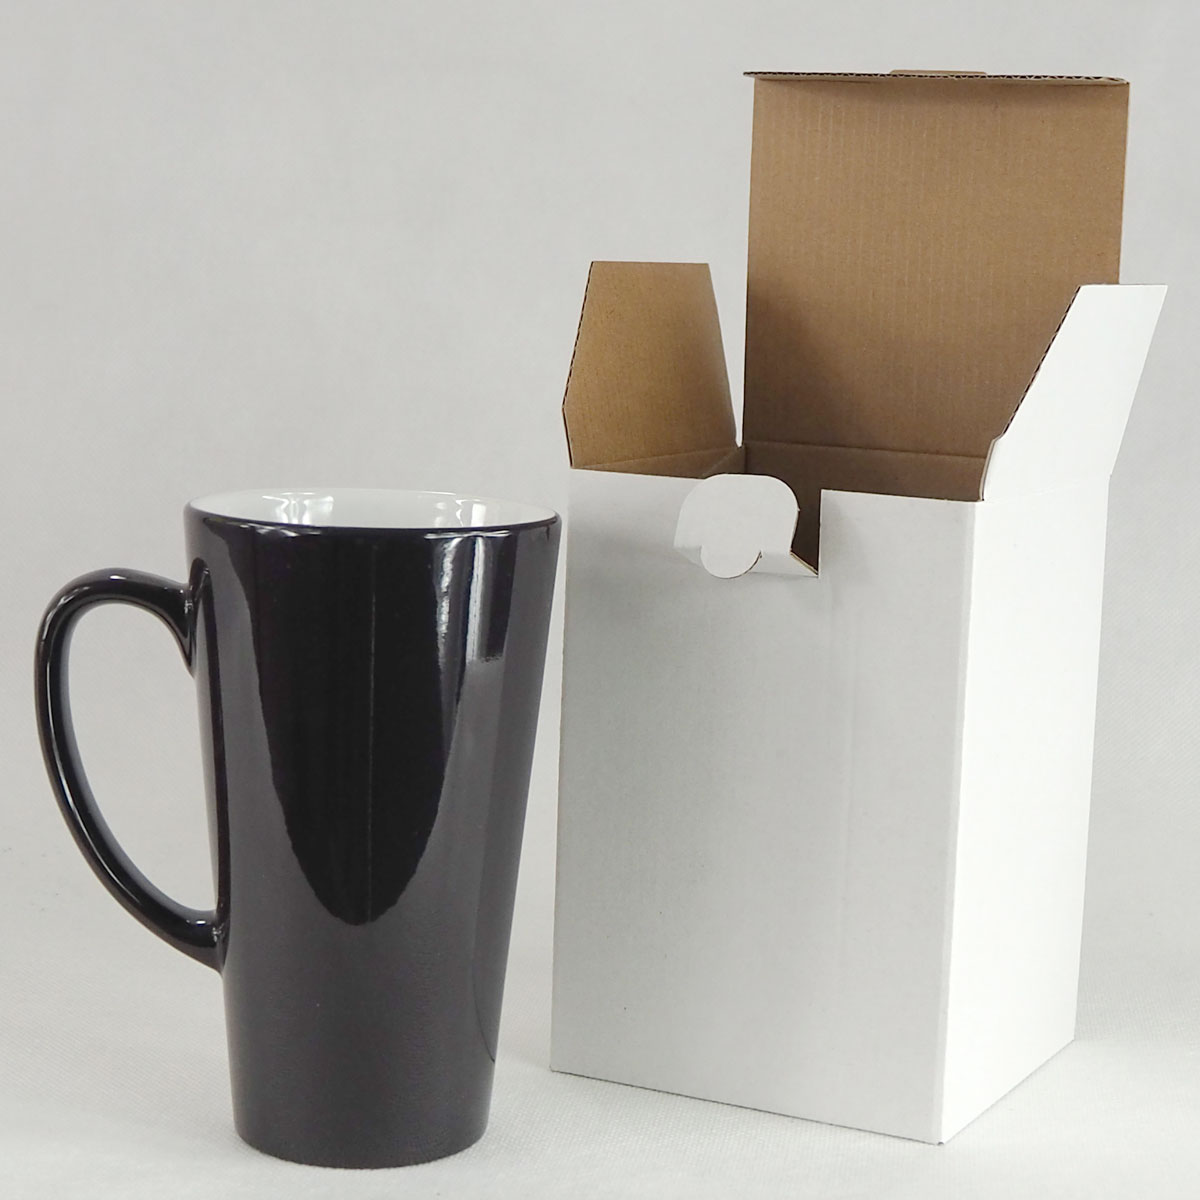 Box for big latte mug - 10 pieces